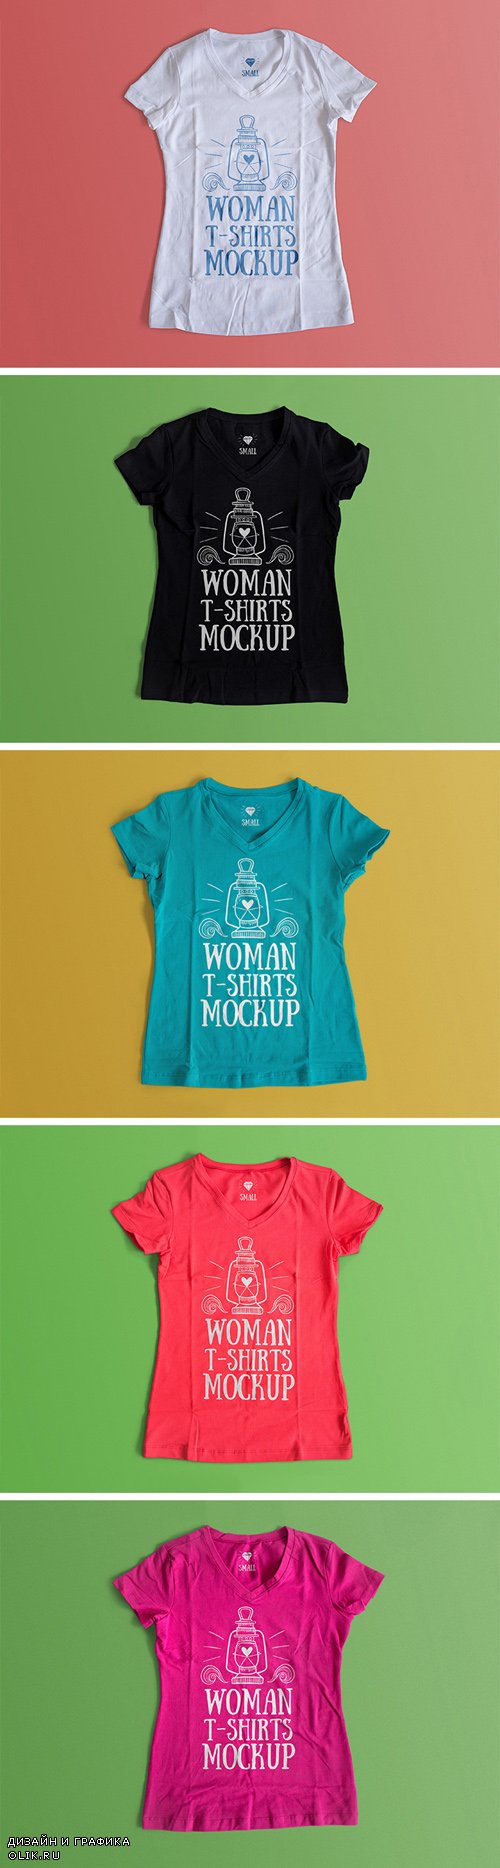 Макеты для PHSP - Женская летняя футболка с рисунком